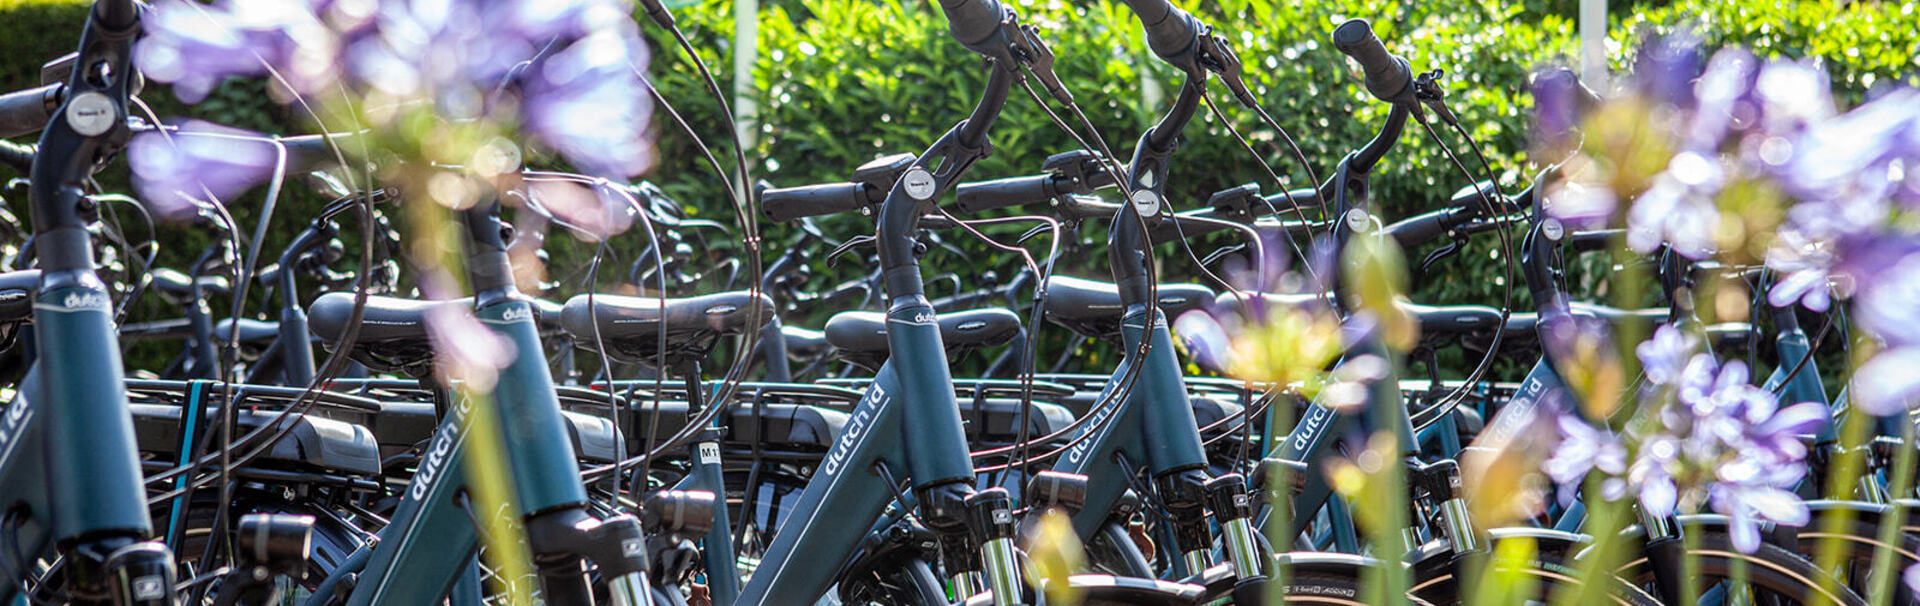 Wir haben die größte Auswahl an E-Bikes und sportlichen Citybikes 